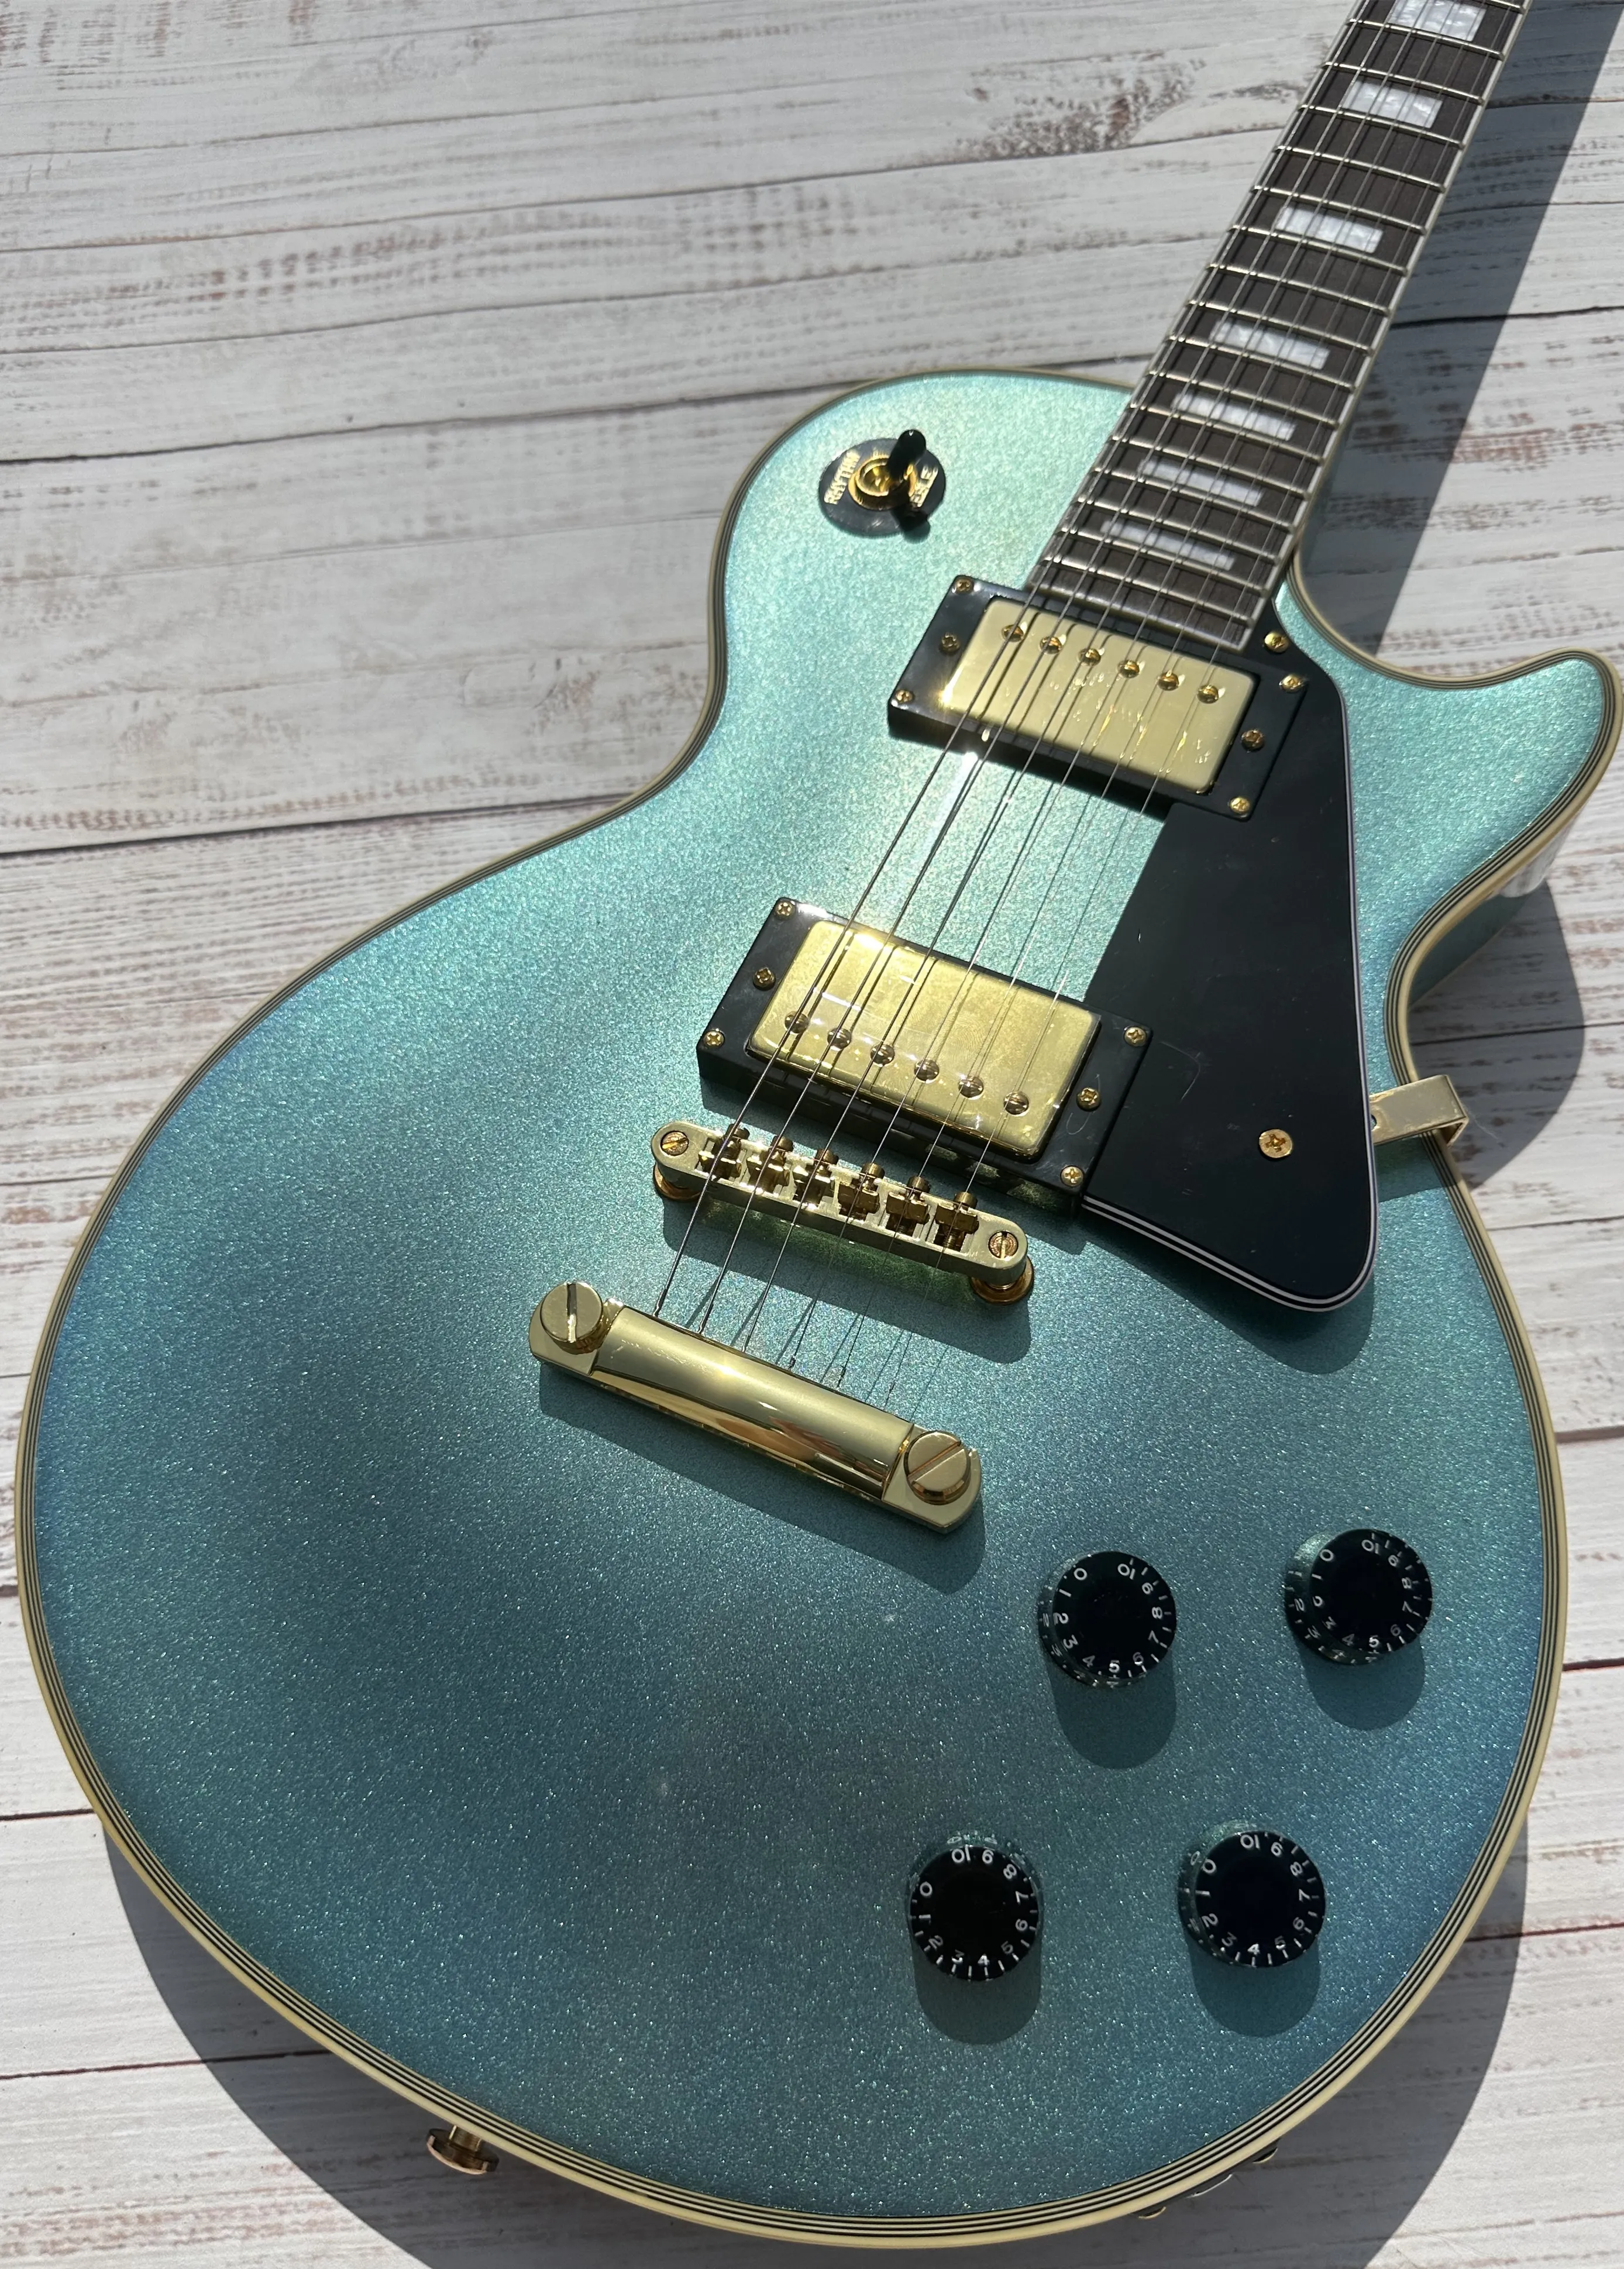 Anpassad elektrisk gitarr, Pelham Karsten, all-blå, guldtillbehör och tuner, blixtpaket